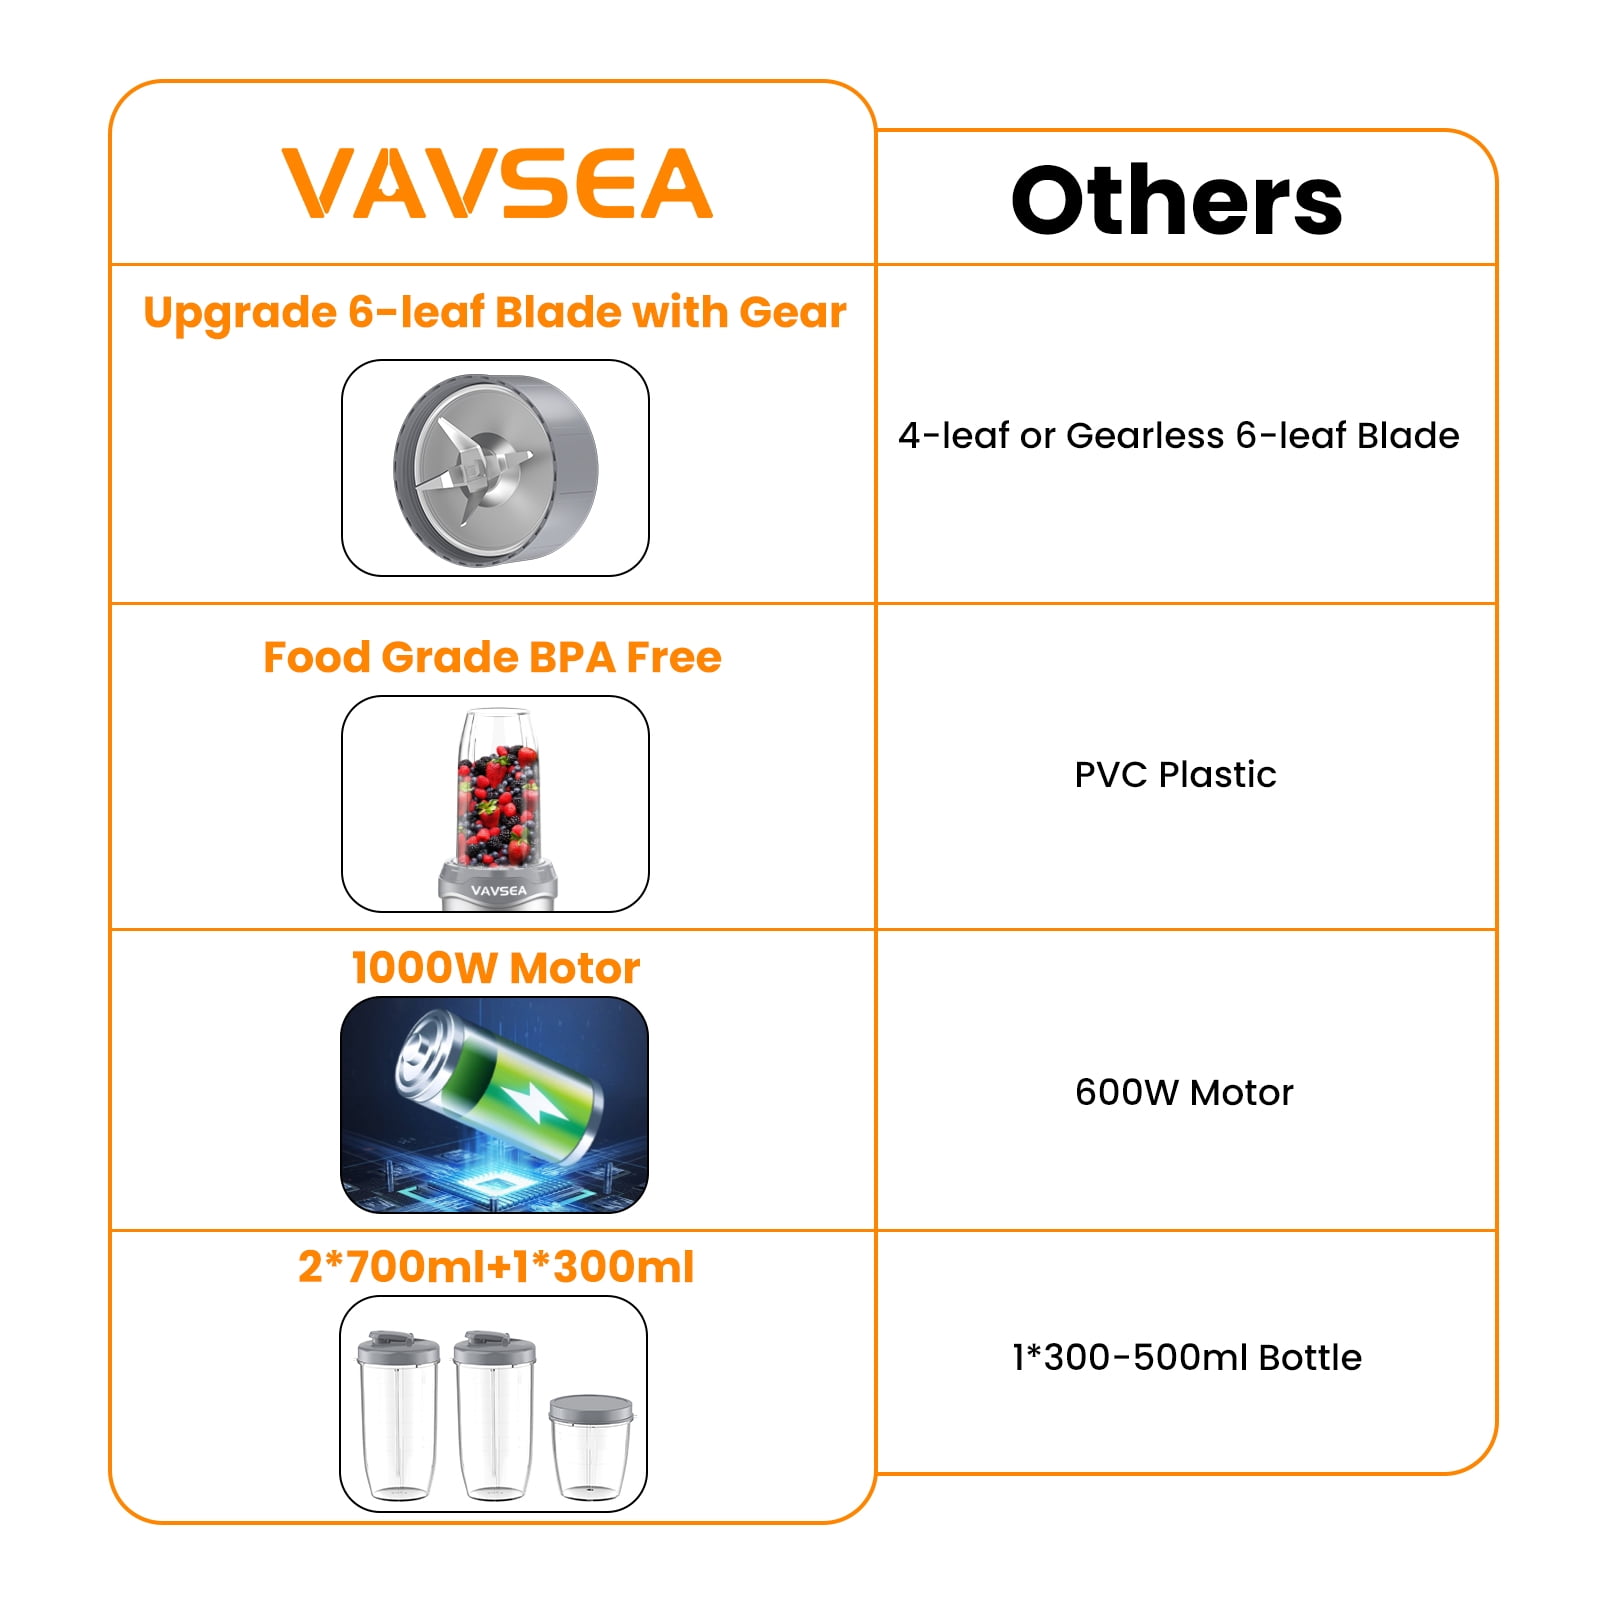 VAVSEA Blender: Blend, Grind, Shake – 3-in-1 Combo Power! Free Shipping